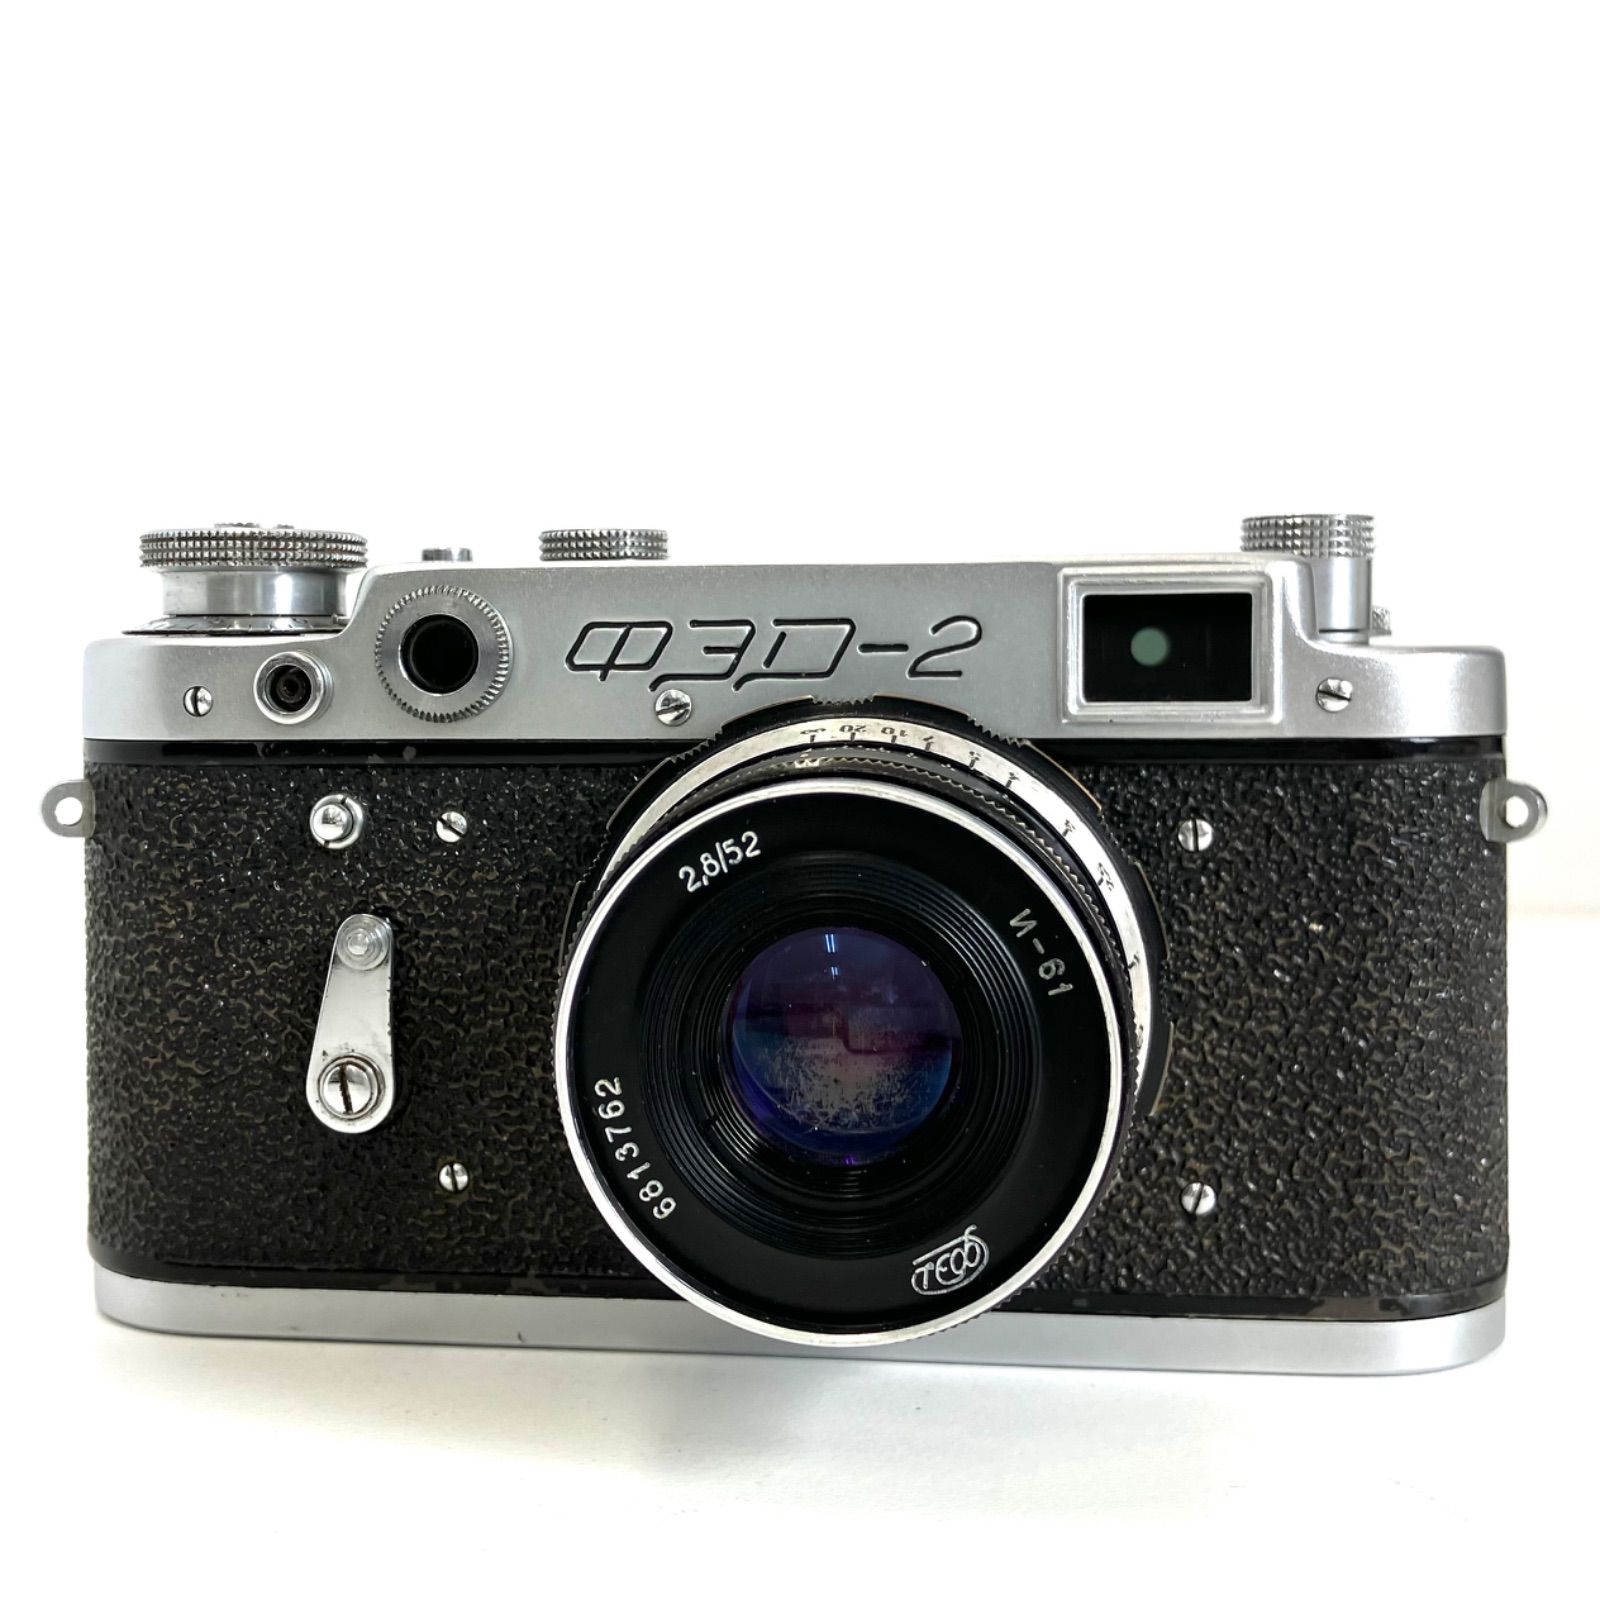 627924】 FED-2 ライカコピー レンズセット N-61 52mm f2.8 美品